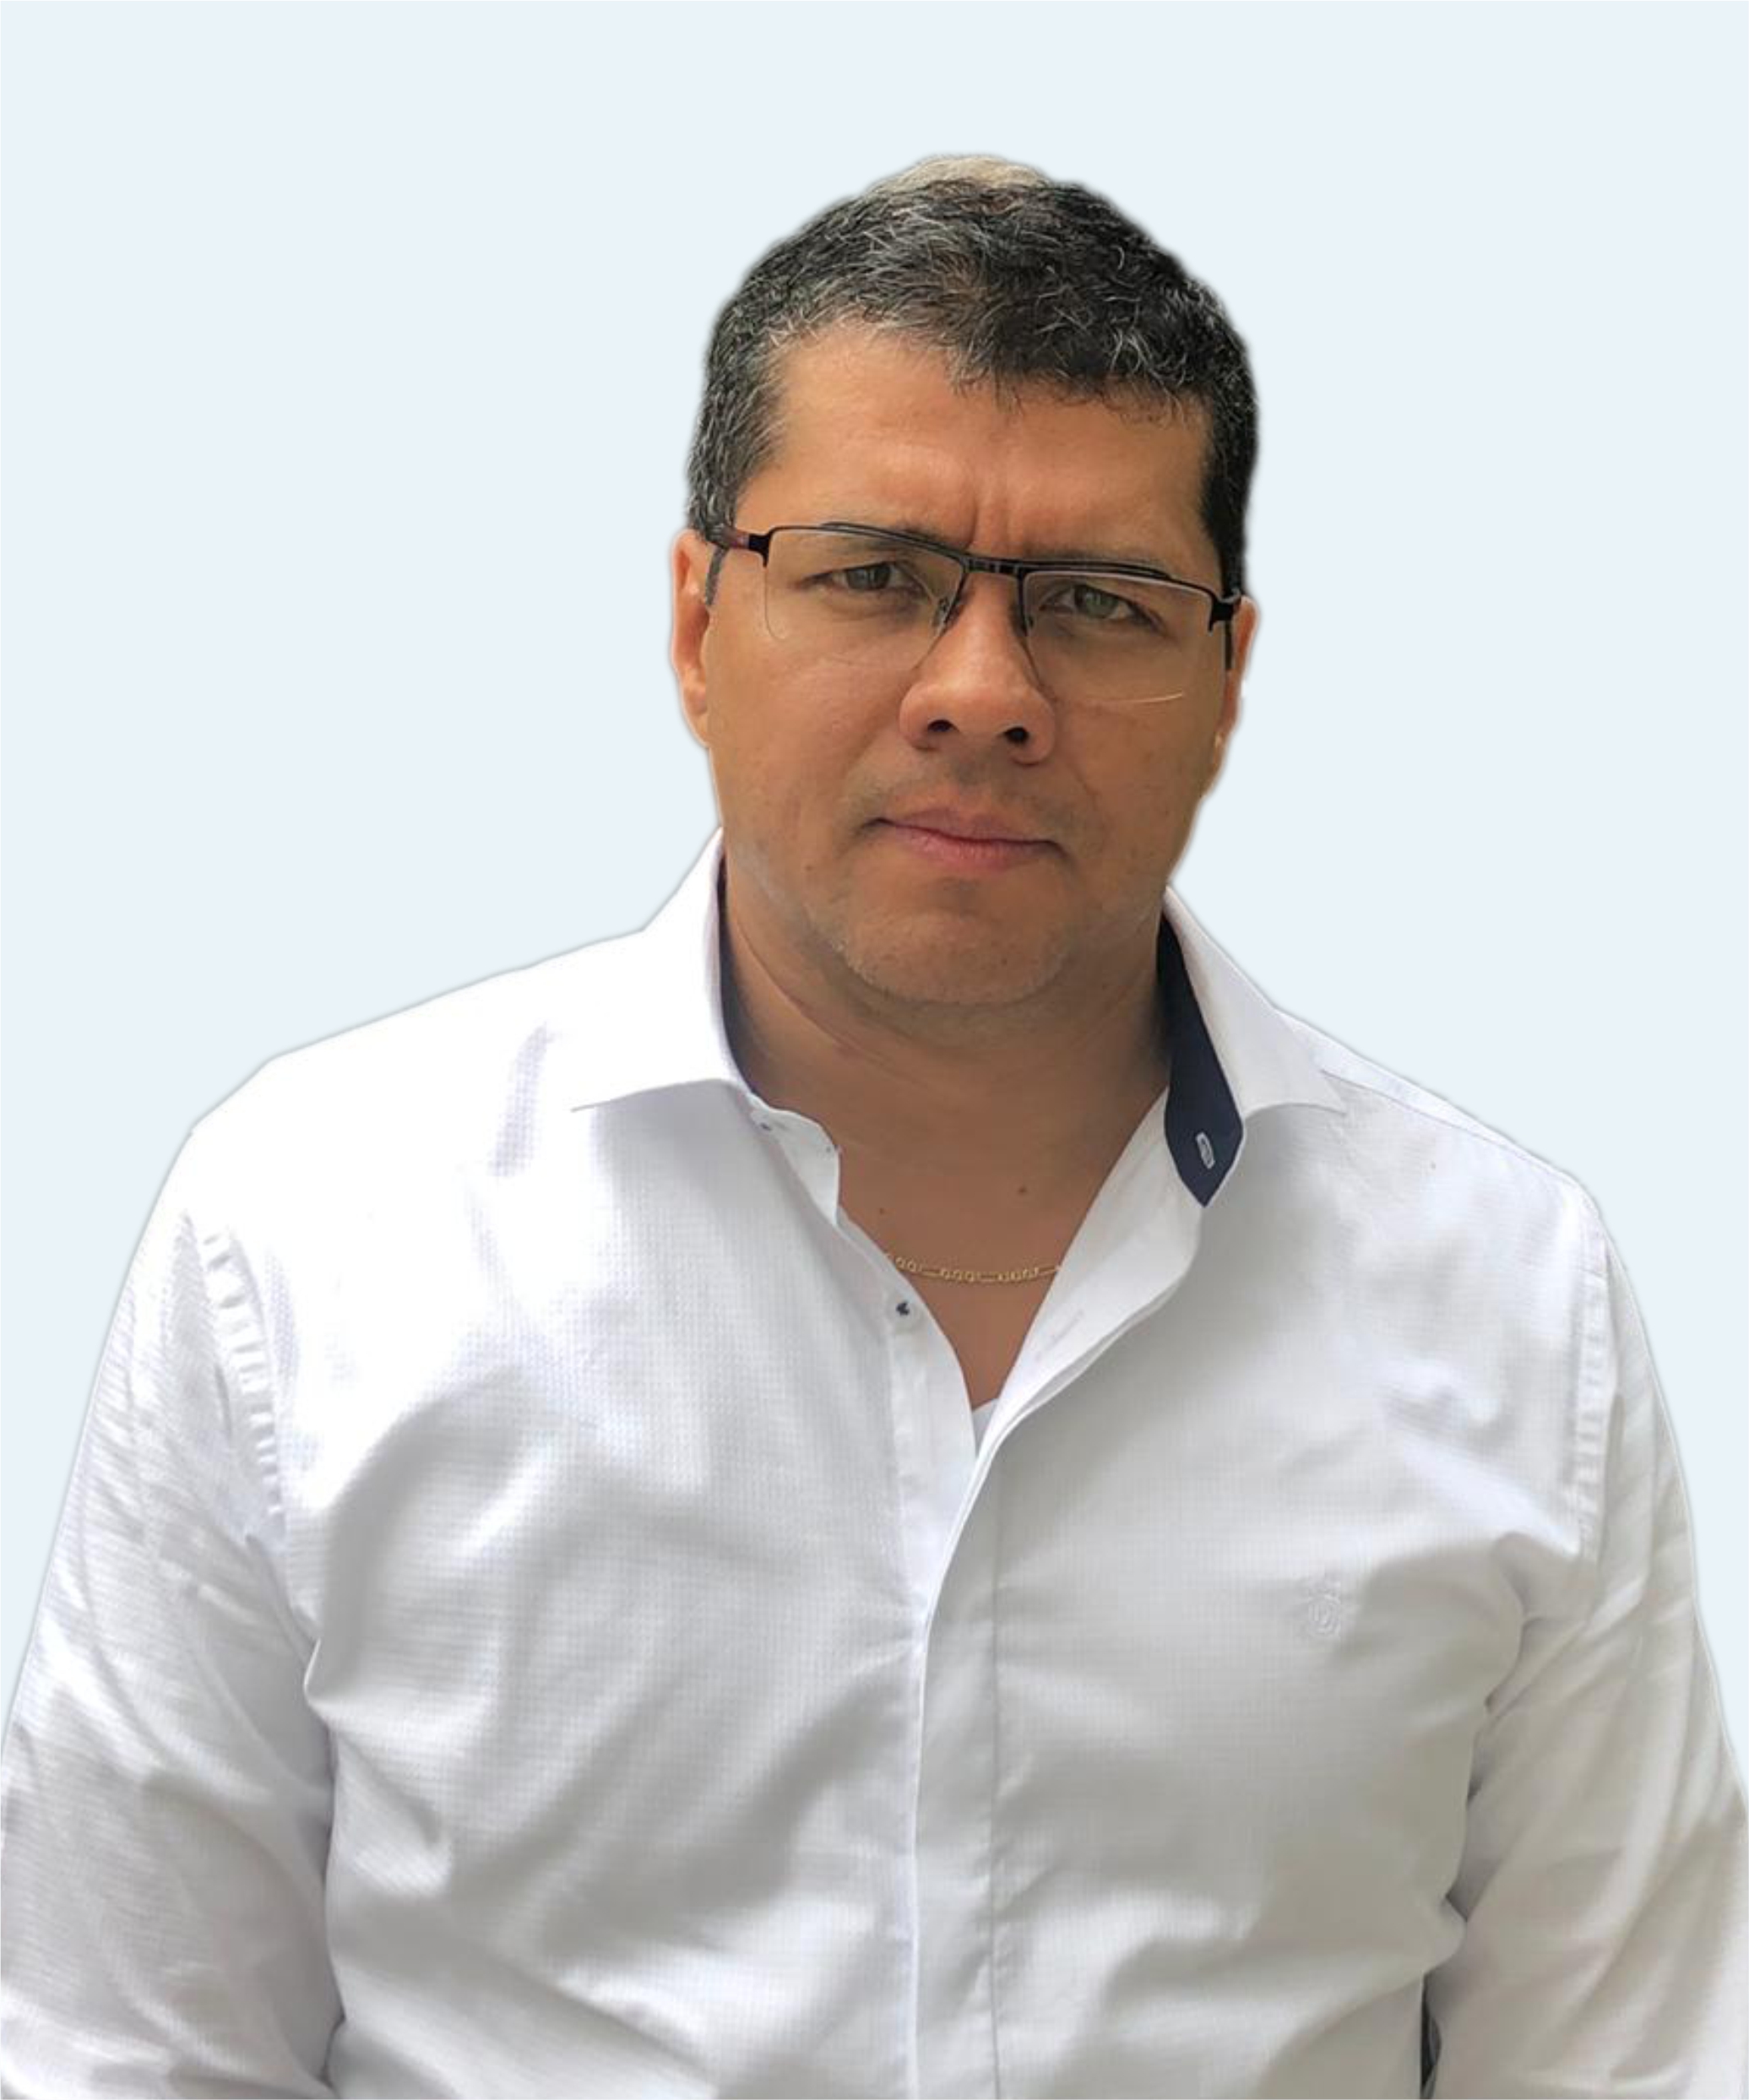 CARLOS HERNAN OCAMPO RAMIREZ